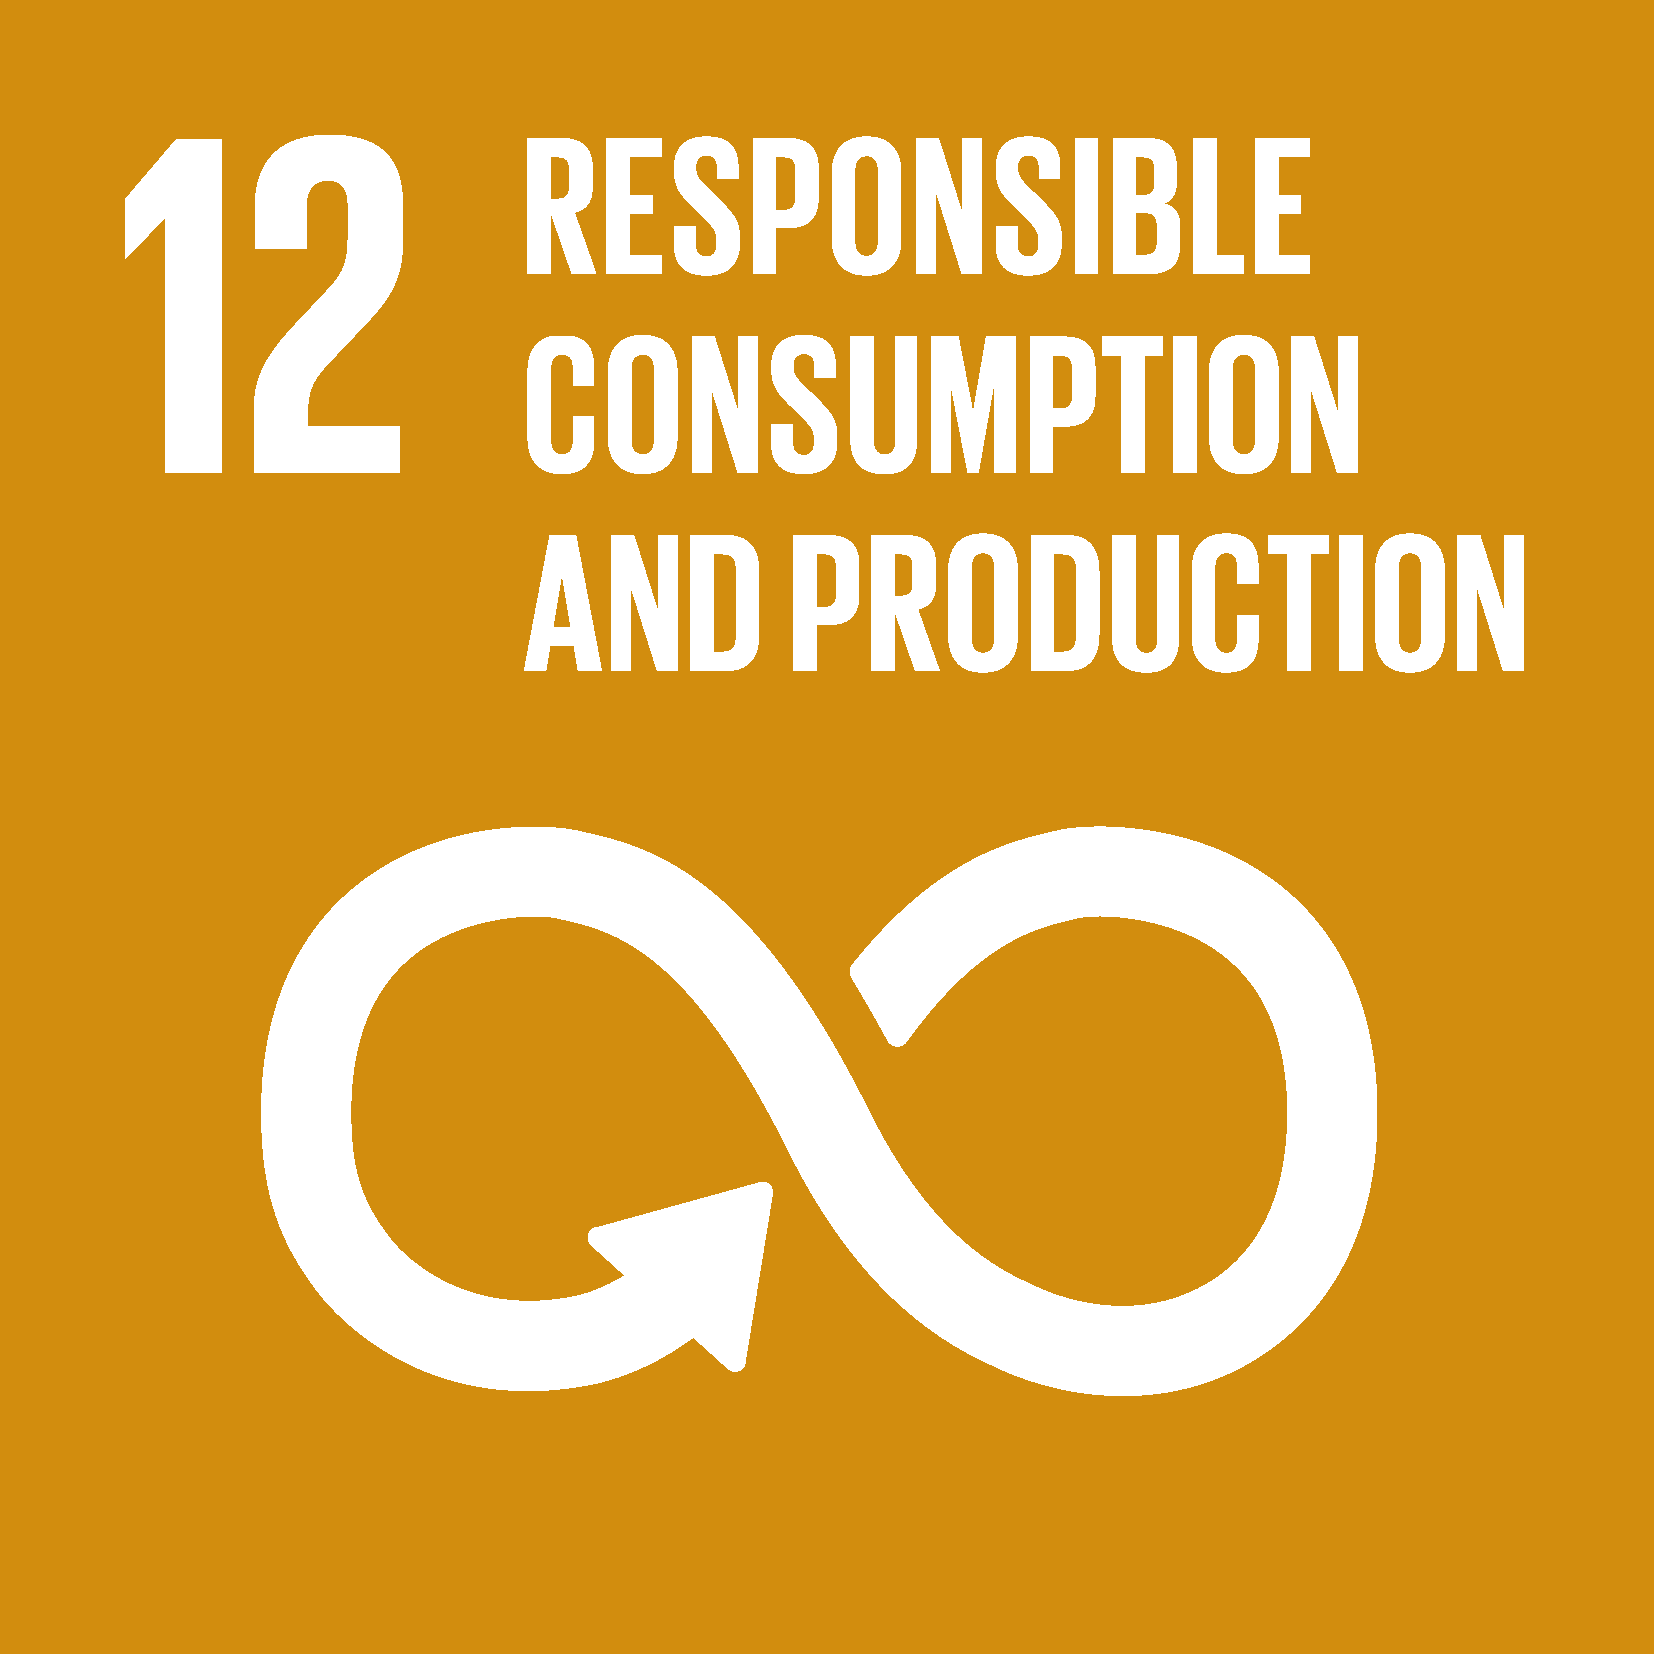 FN verdensmål 12 Ansvarligt forbrug og produktion